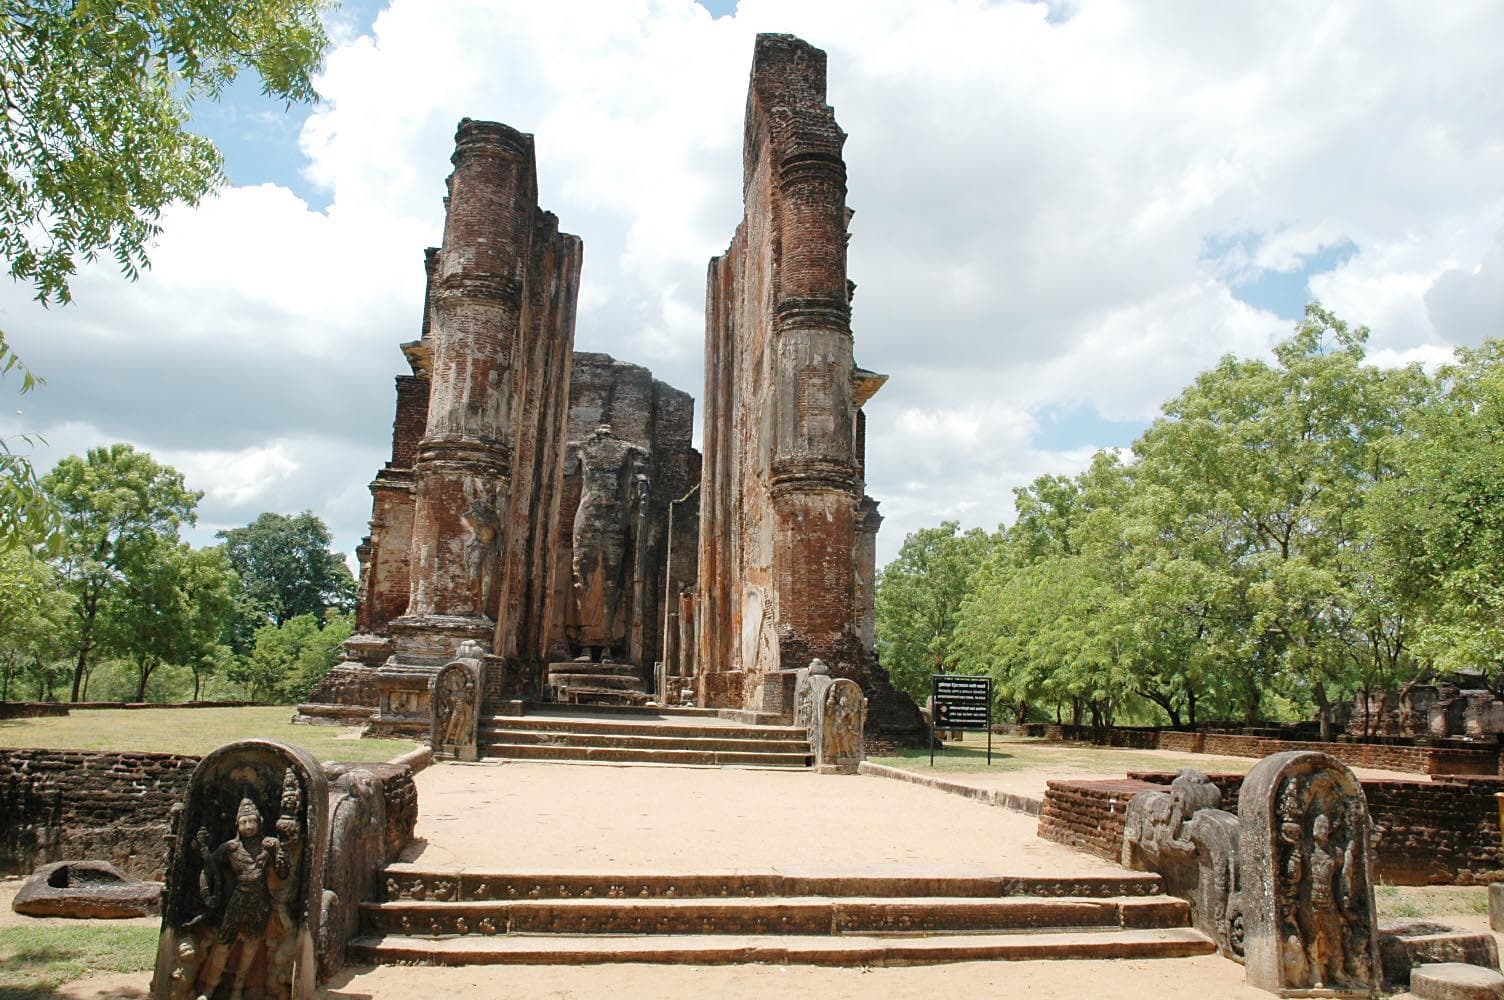 The Buddhist statue in Ancient Ruin City of Polonnaruwa, Sri Lanka.